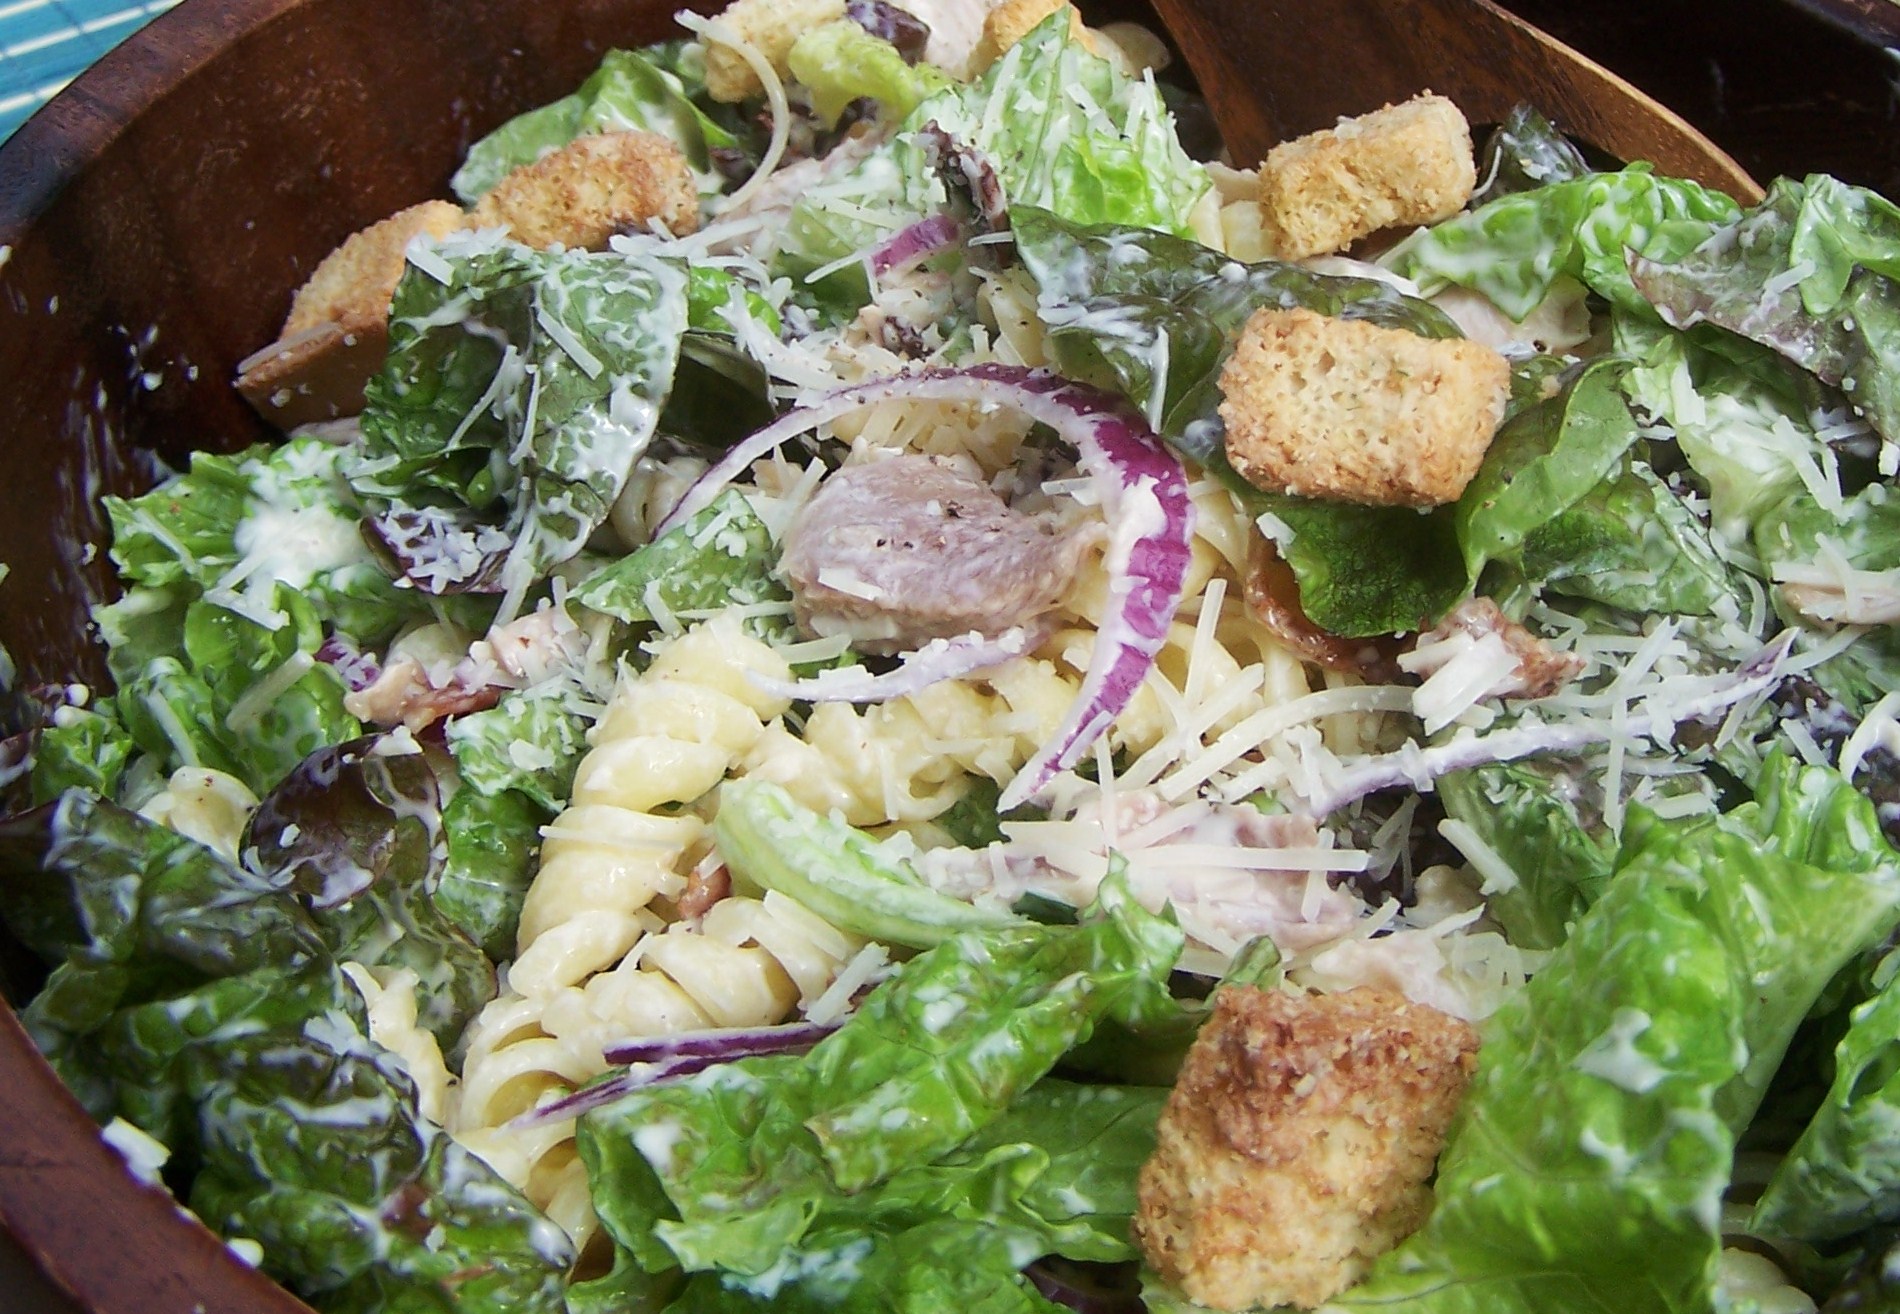 Caesar Pasta Salad